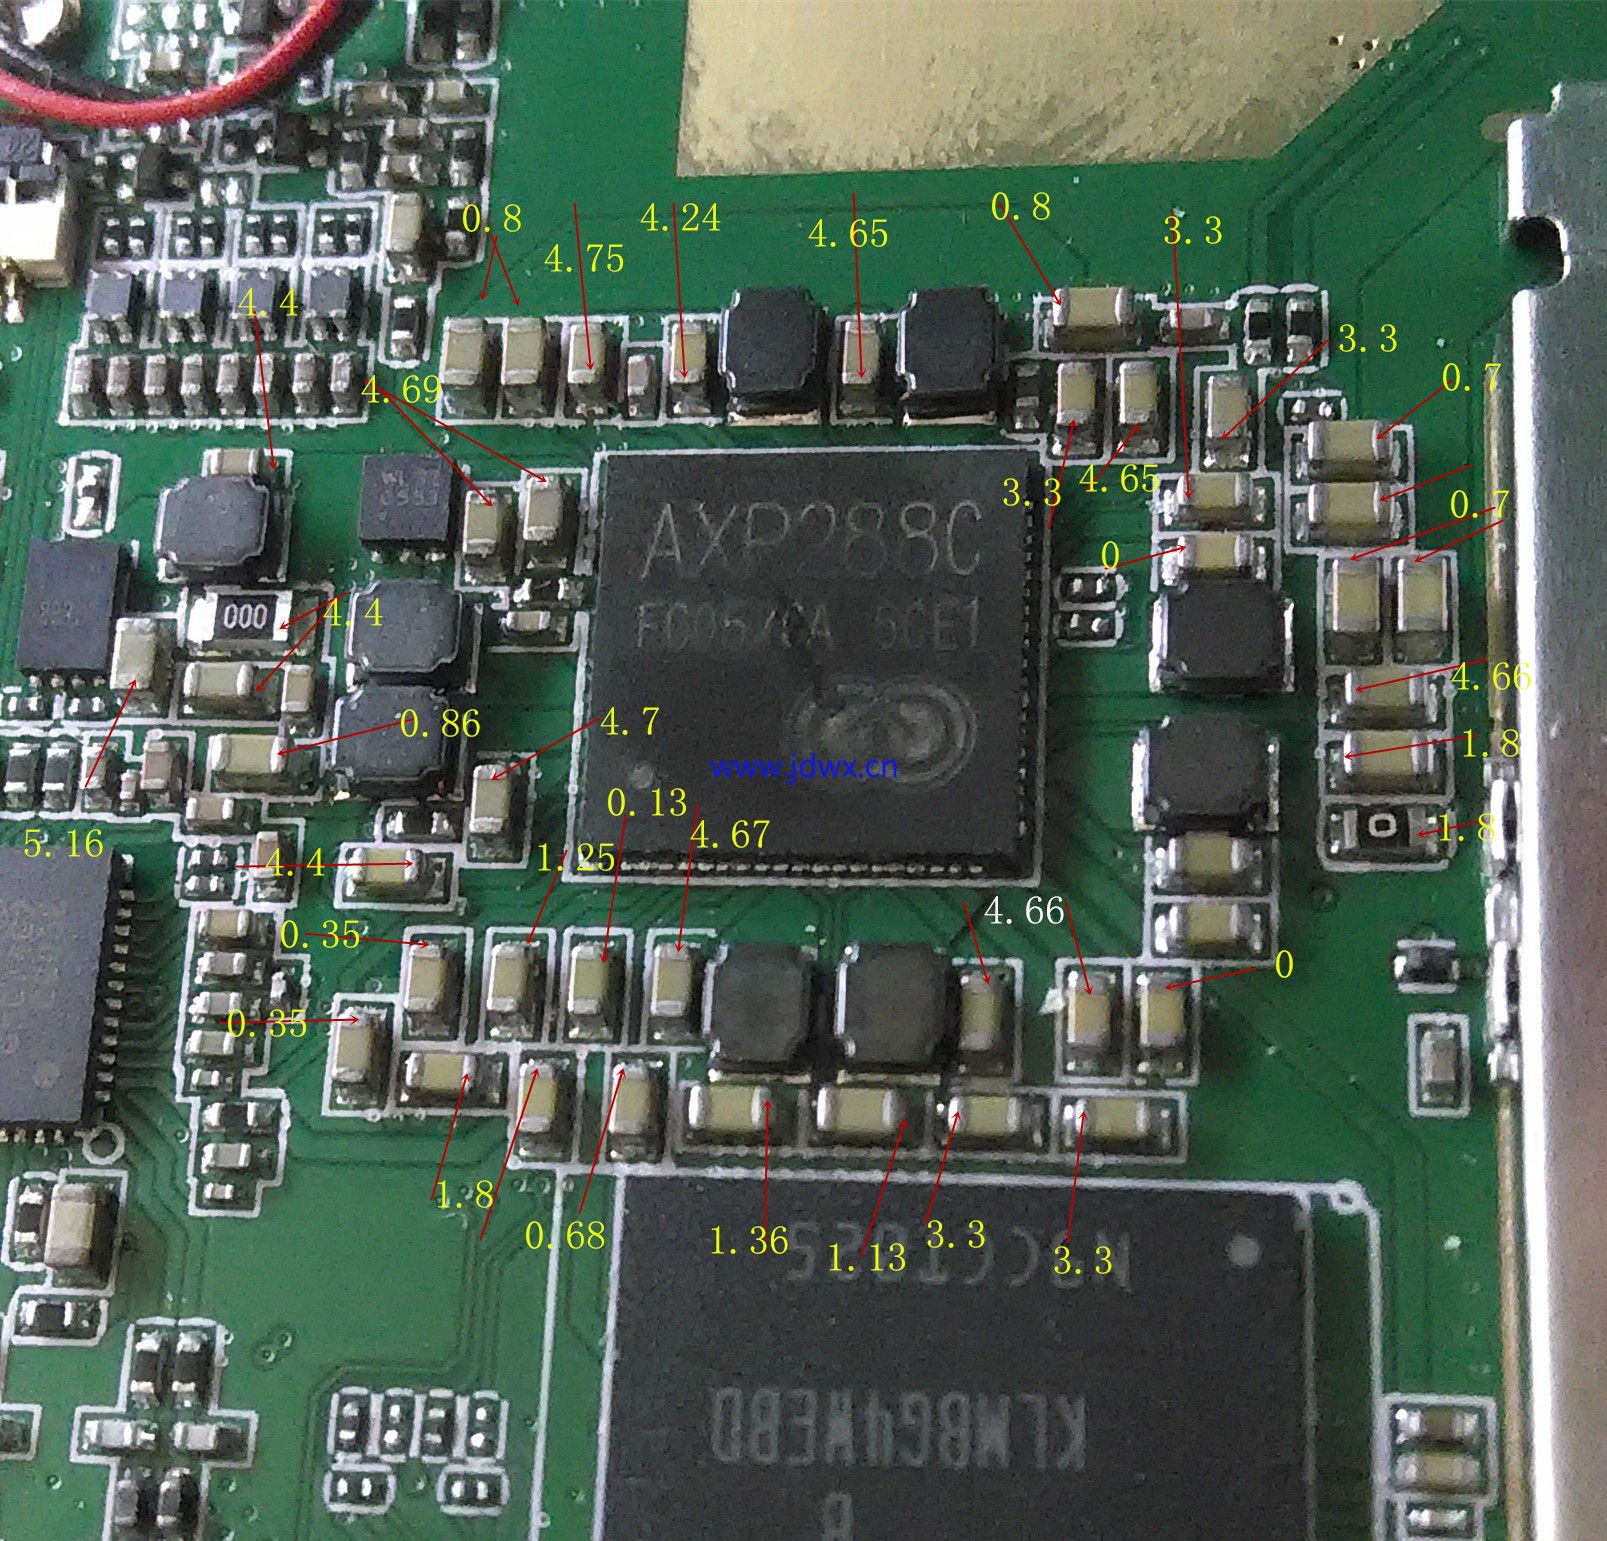 axp288c外围元件实测电压值.jpg